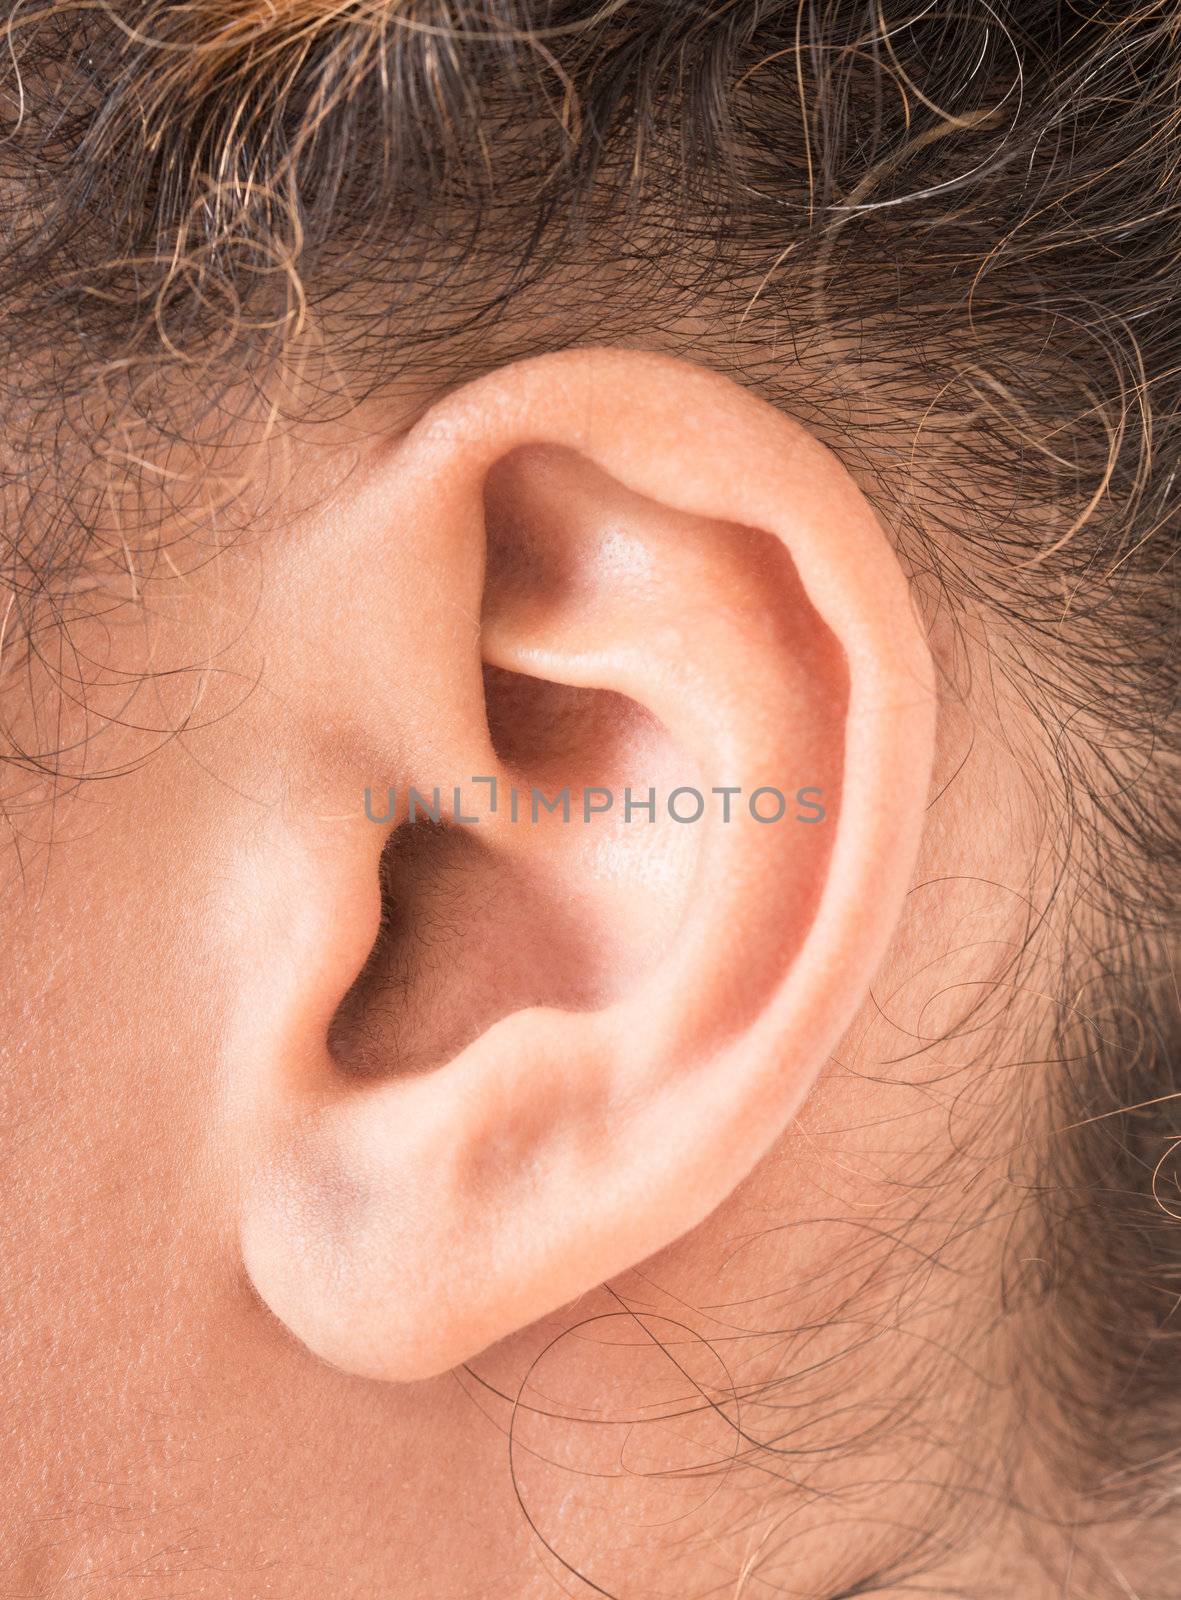 shape of the ear by Sergieiev